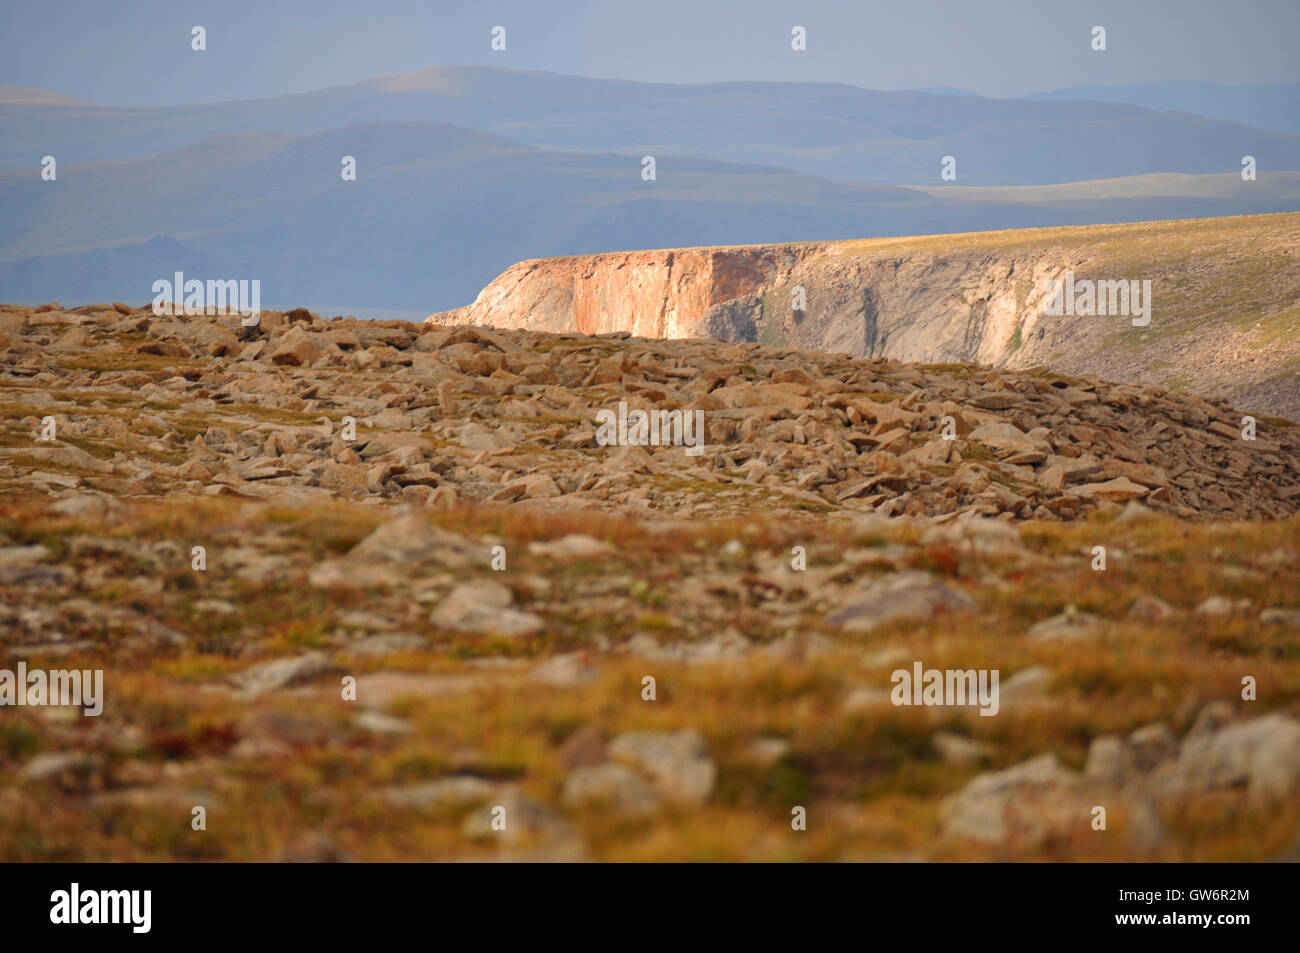 Summit plateau of the Khangai Mountains, Mongolia Stock Photo - Alamy